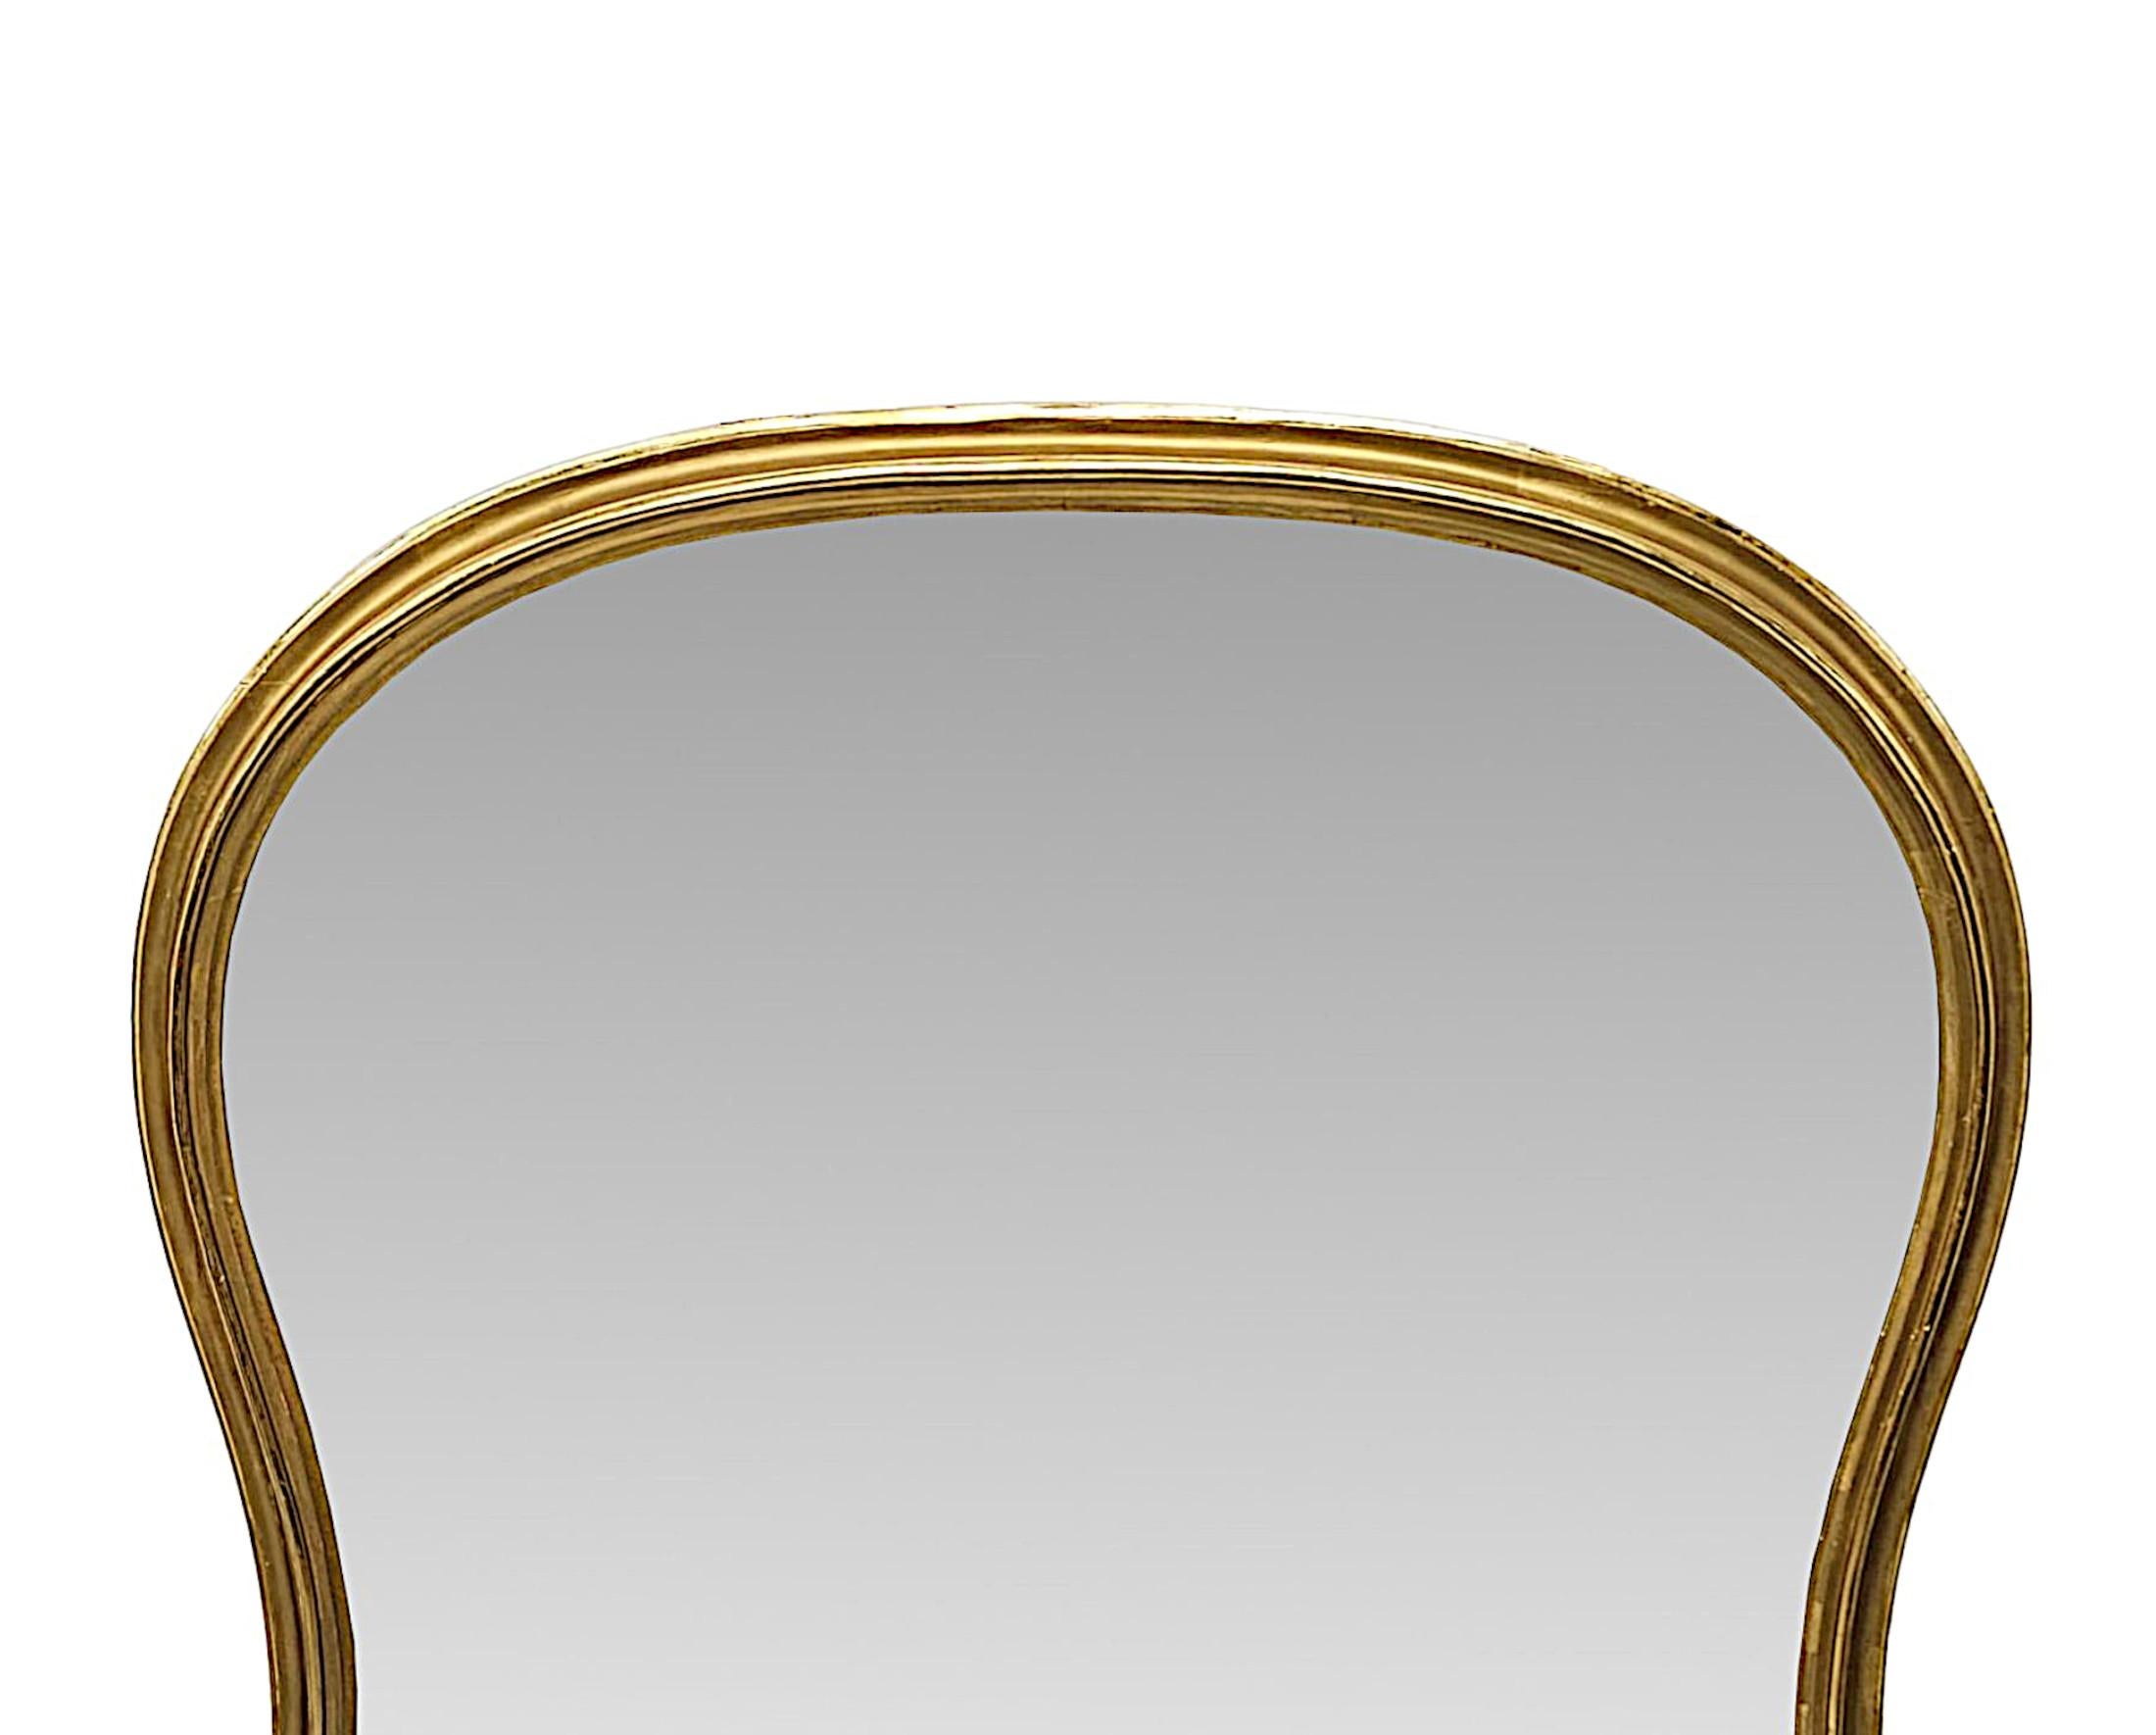 Ein sehr feines 19. Jahrhundert taillierte Archtop vergoldet Overmantel Spiegel, von großen Proportionen und außergewöhnlicher Qualität.  Die geformte Spiegelglasplatte befindet sich in einem elegant schlichten und atemberaubend handgeschnitzten,